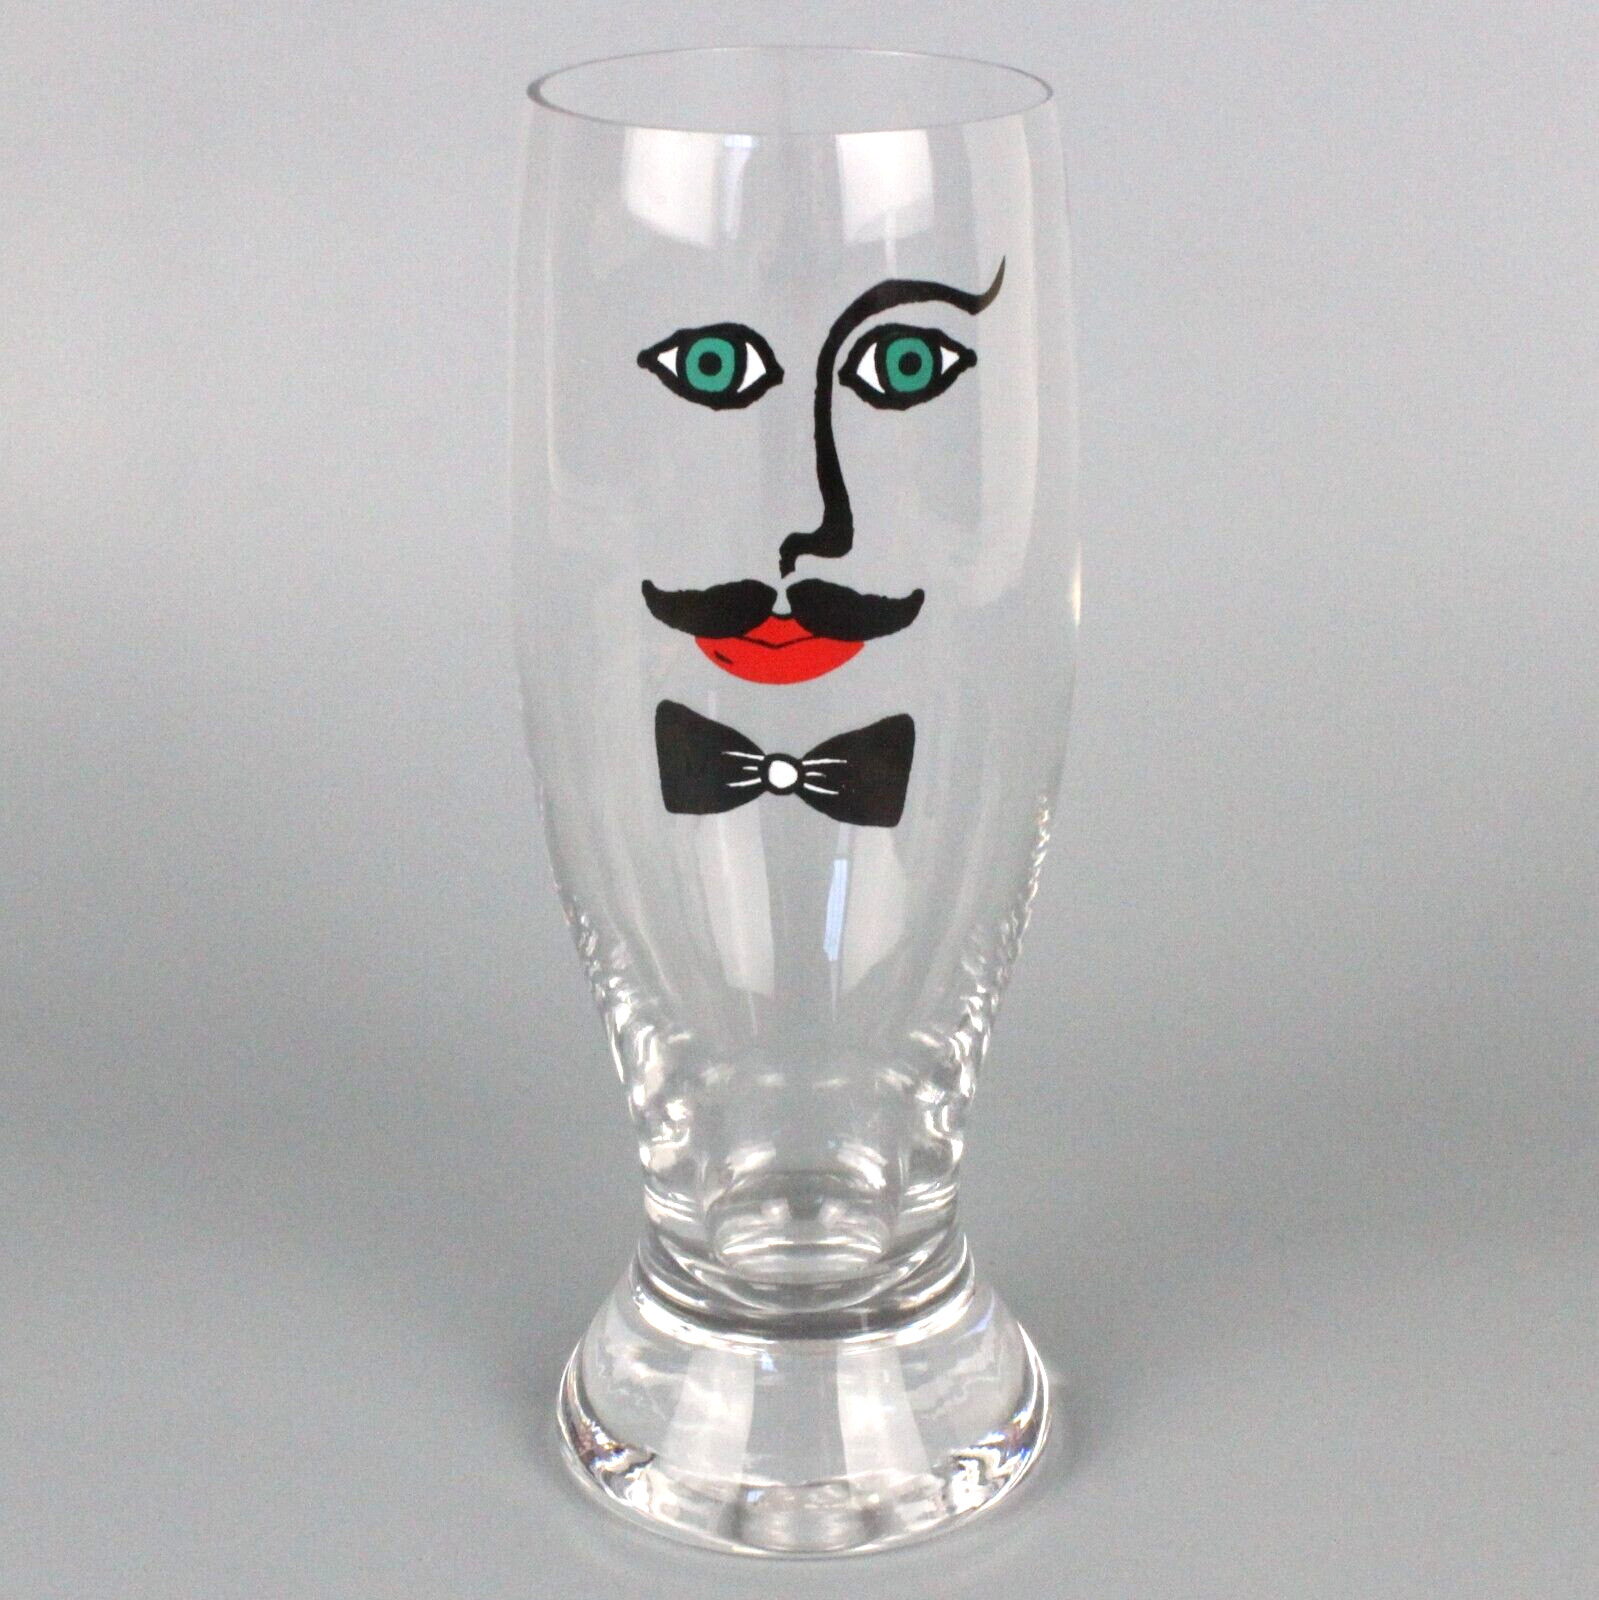 Kosta Boda Sea Glasbruk He Man Face Barware Beer Glass single 7.5 in Vintage 80s